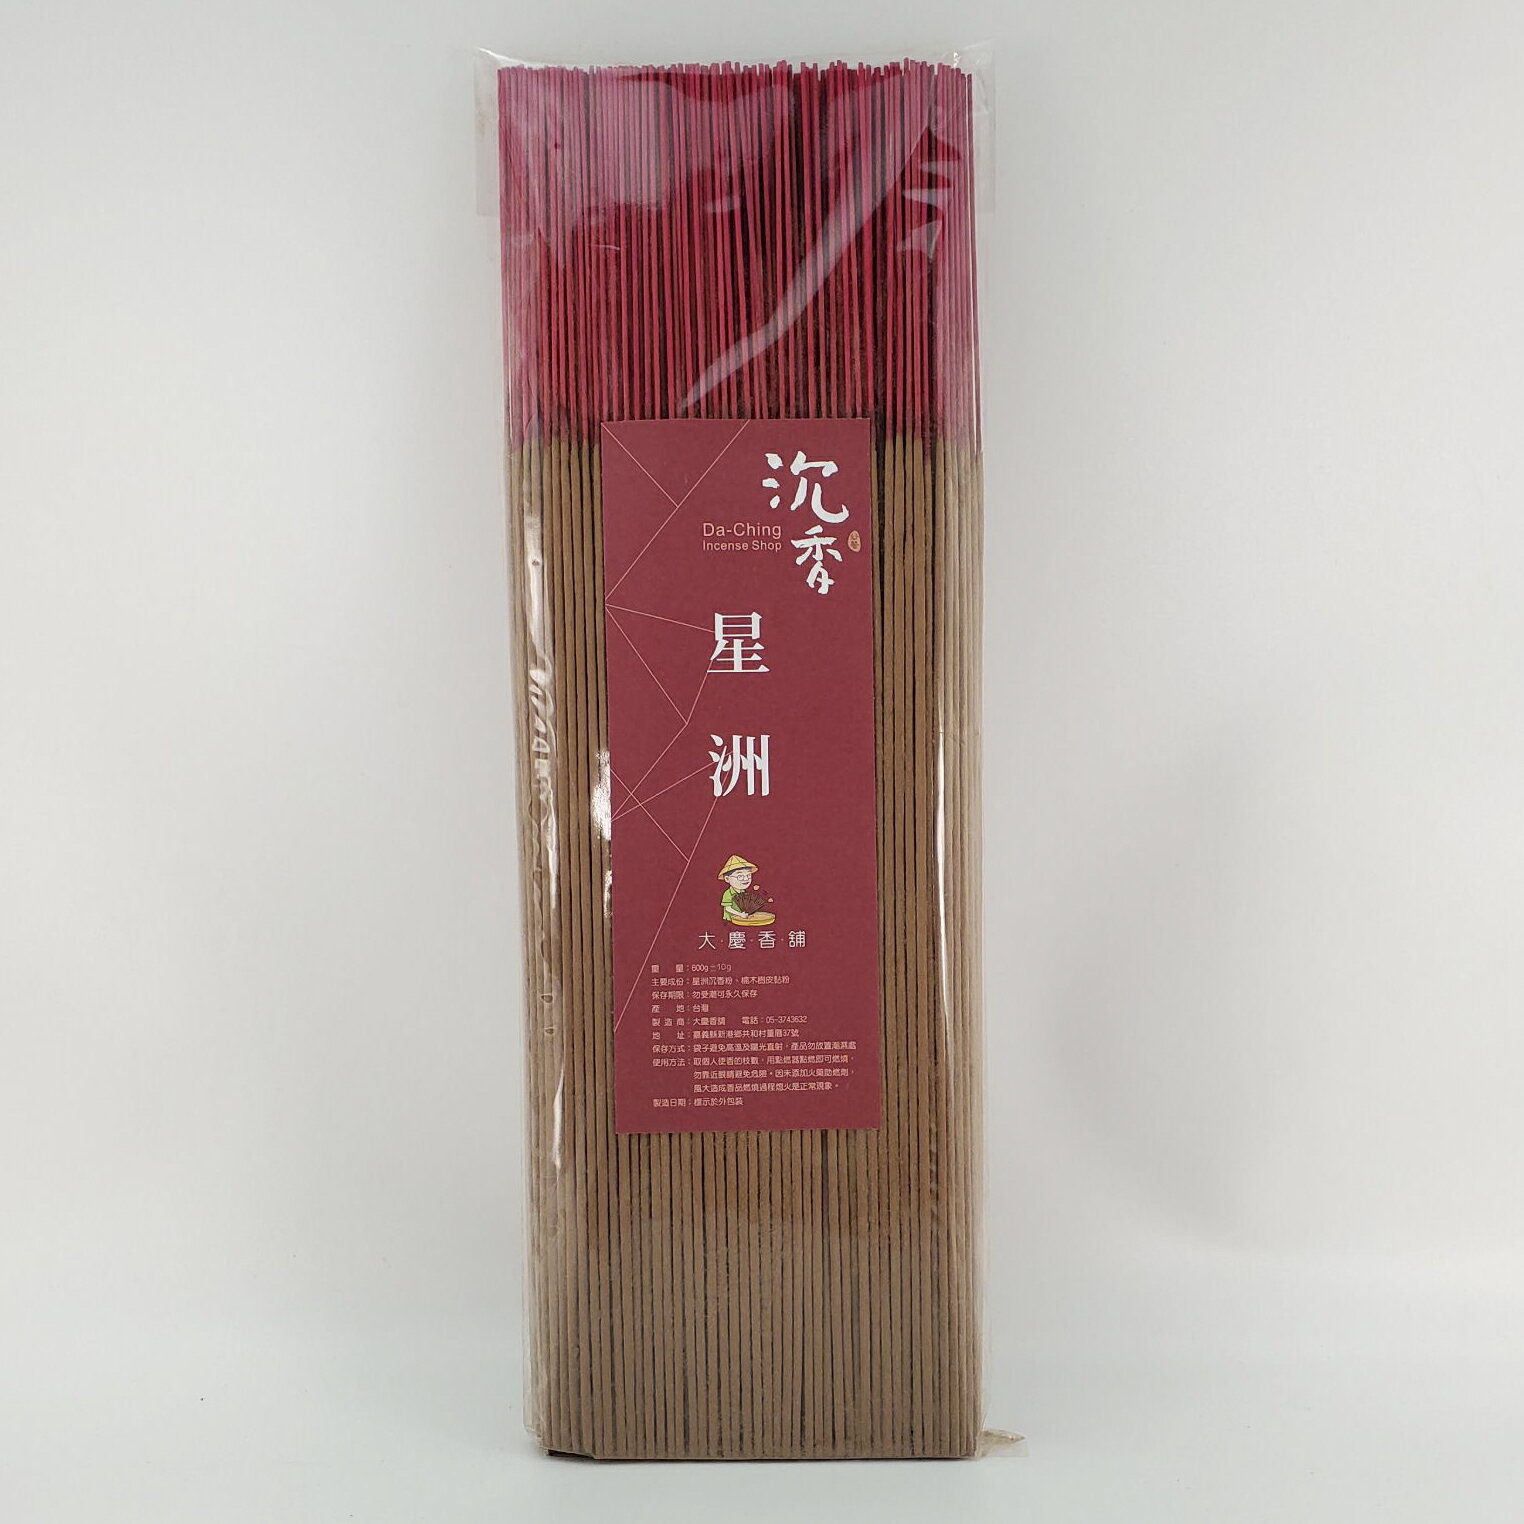 立香 沉香類 星洲沉香 (一尺六)台灣製造 天然 安全 環保